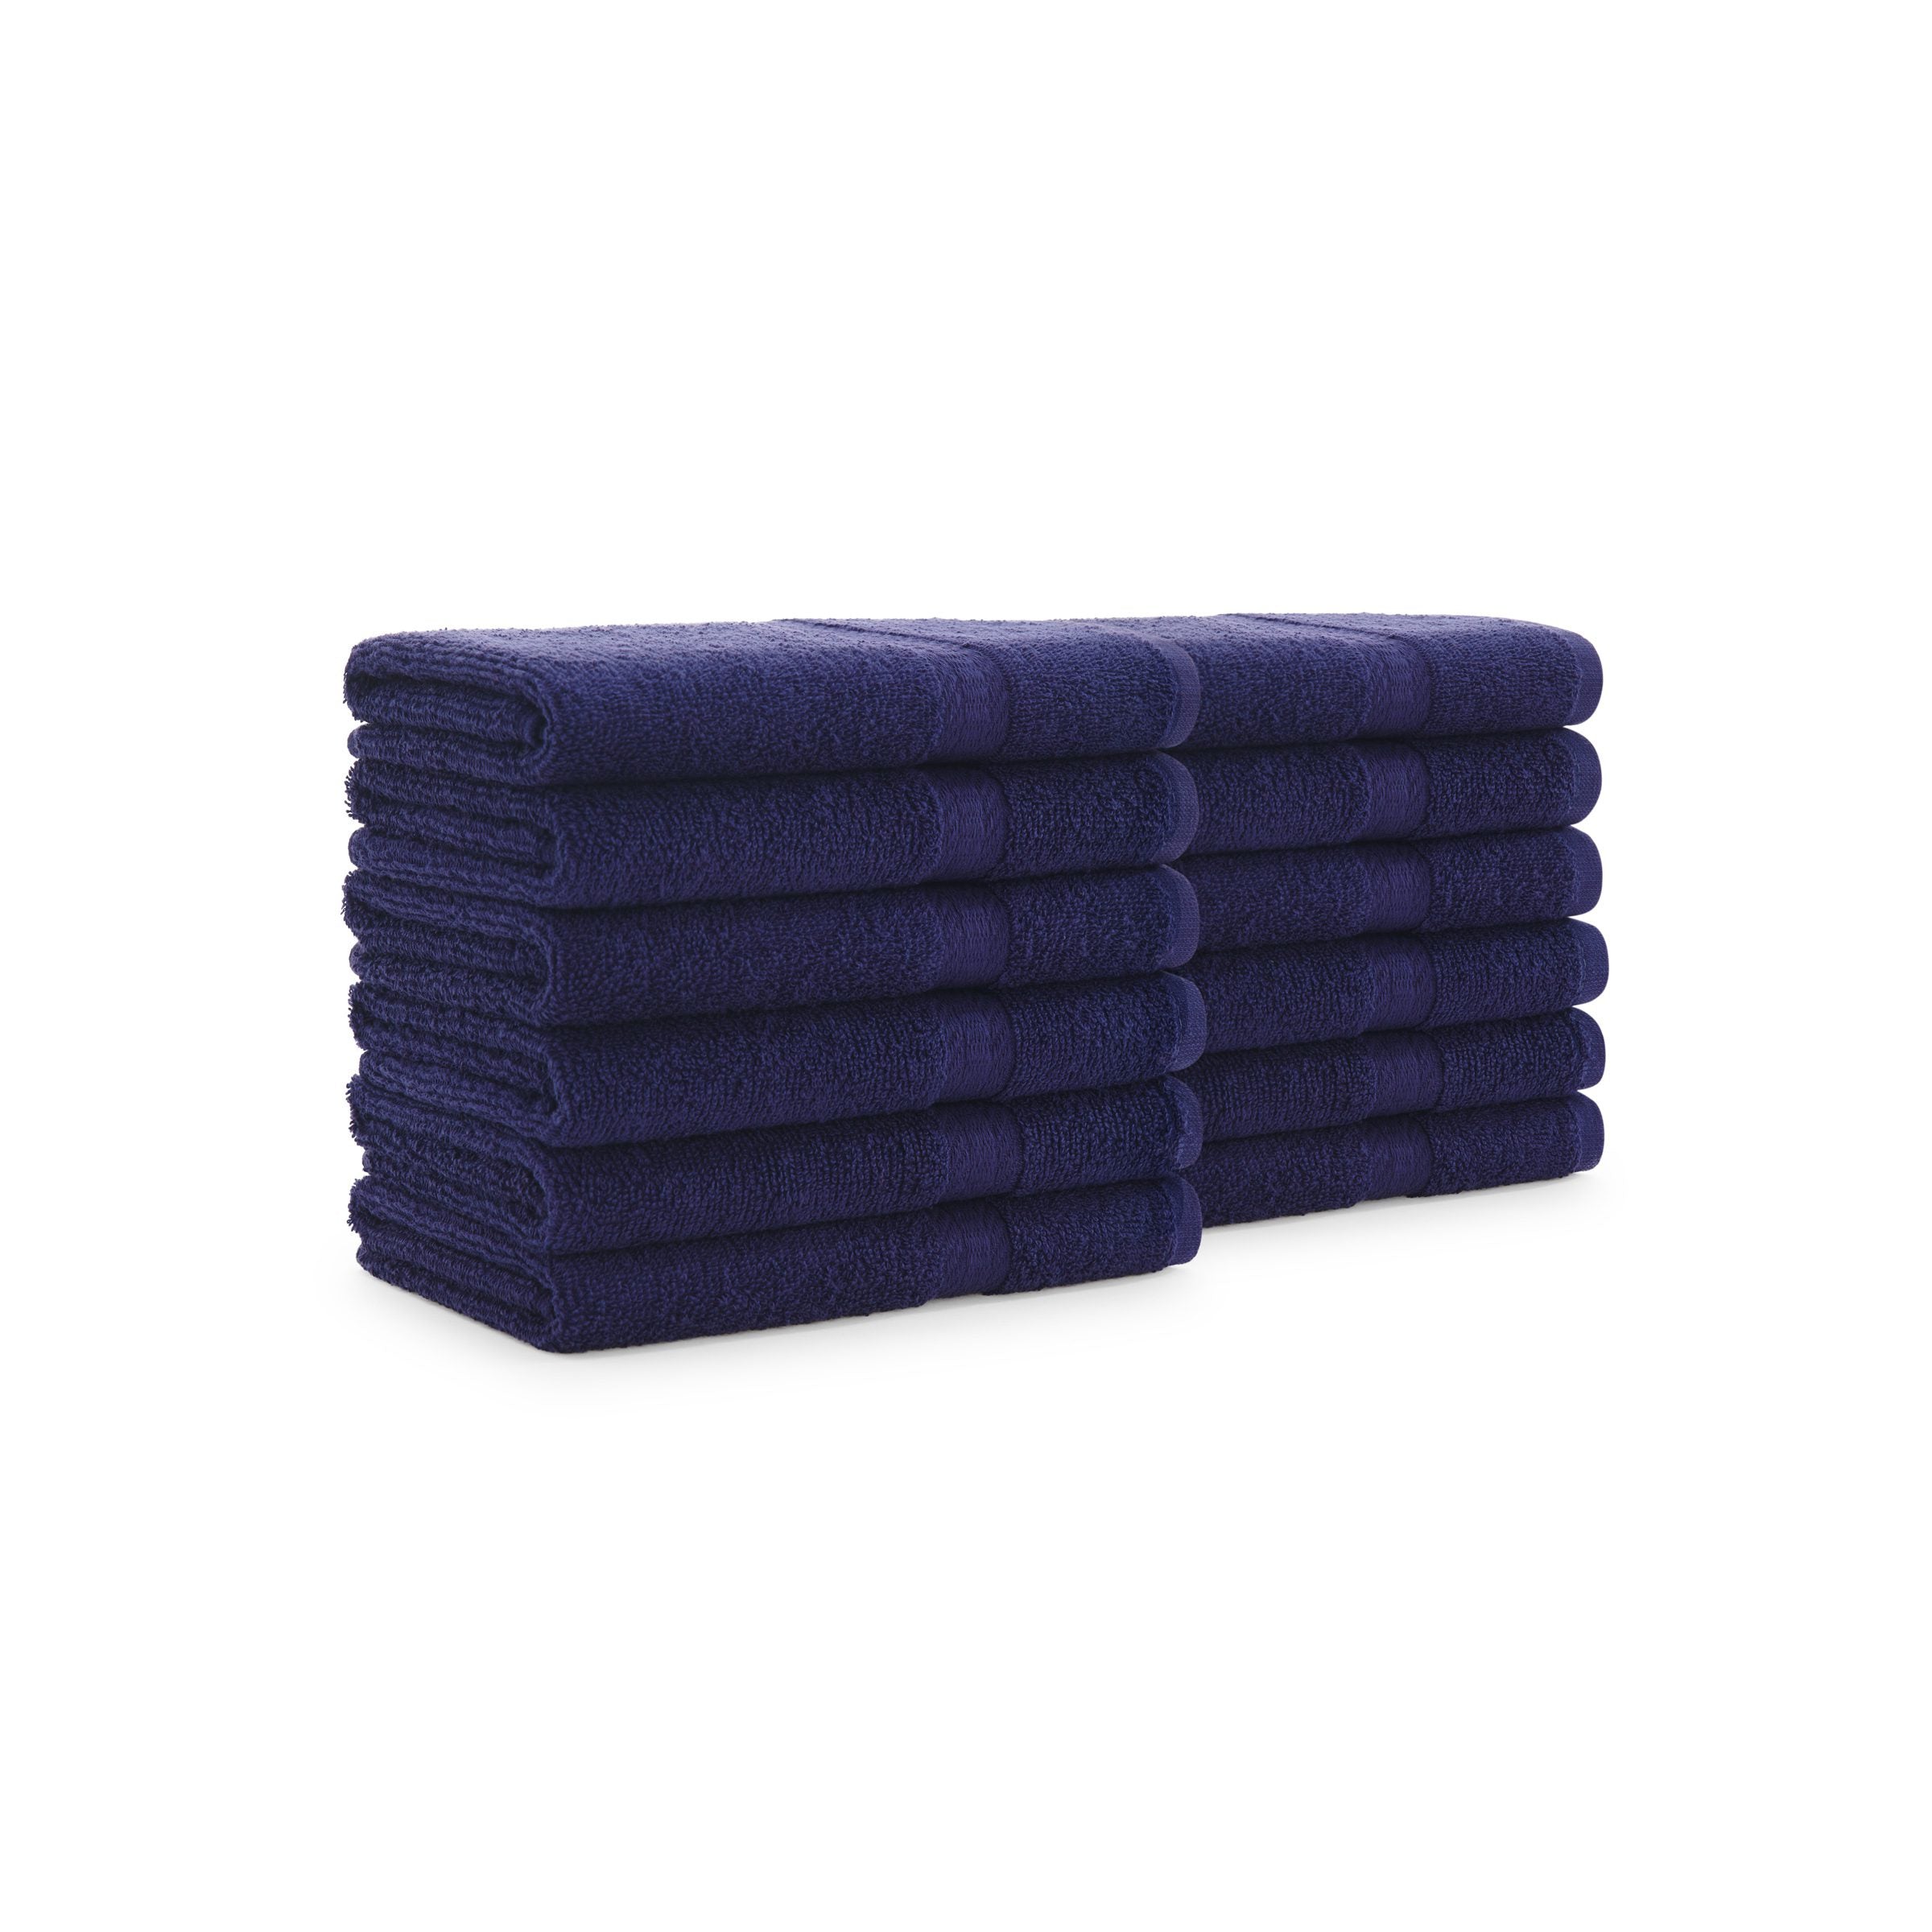 Commercial towels,Terry Cloth towels, Mednik Riverbend